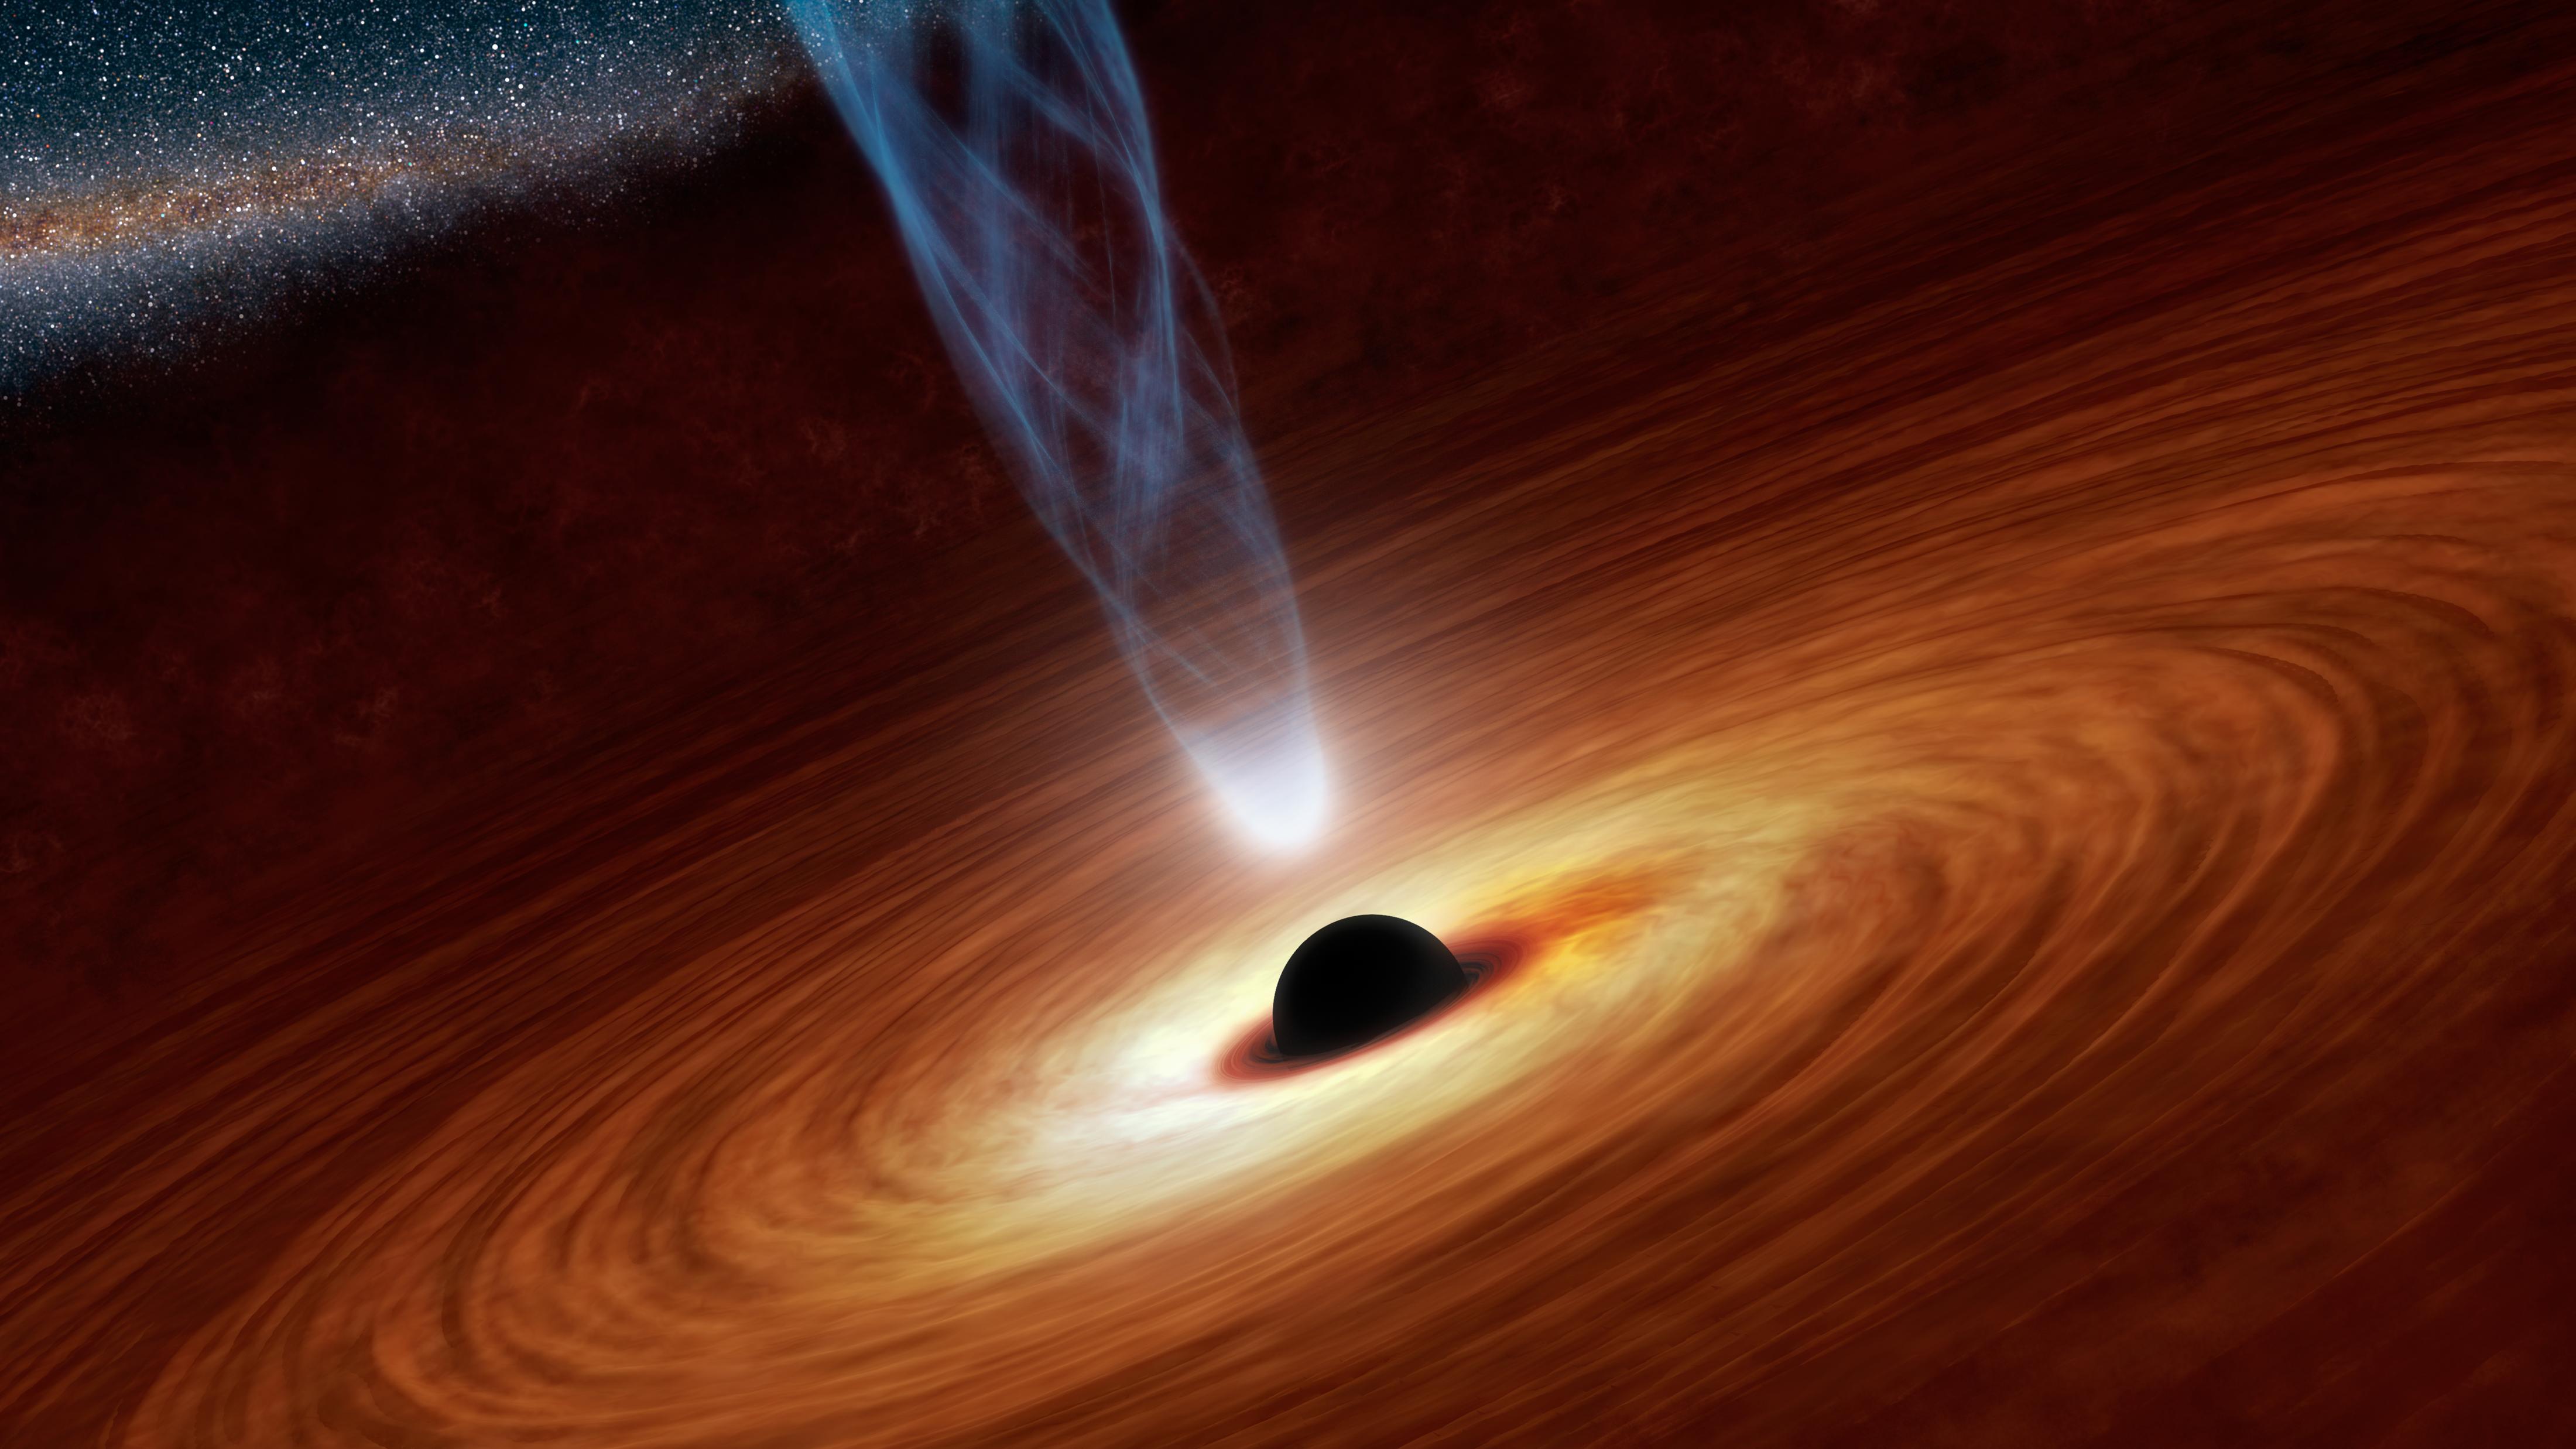 Free essay on black holes